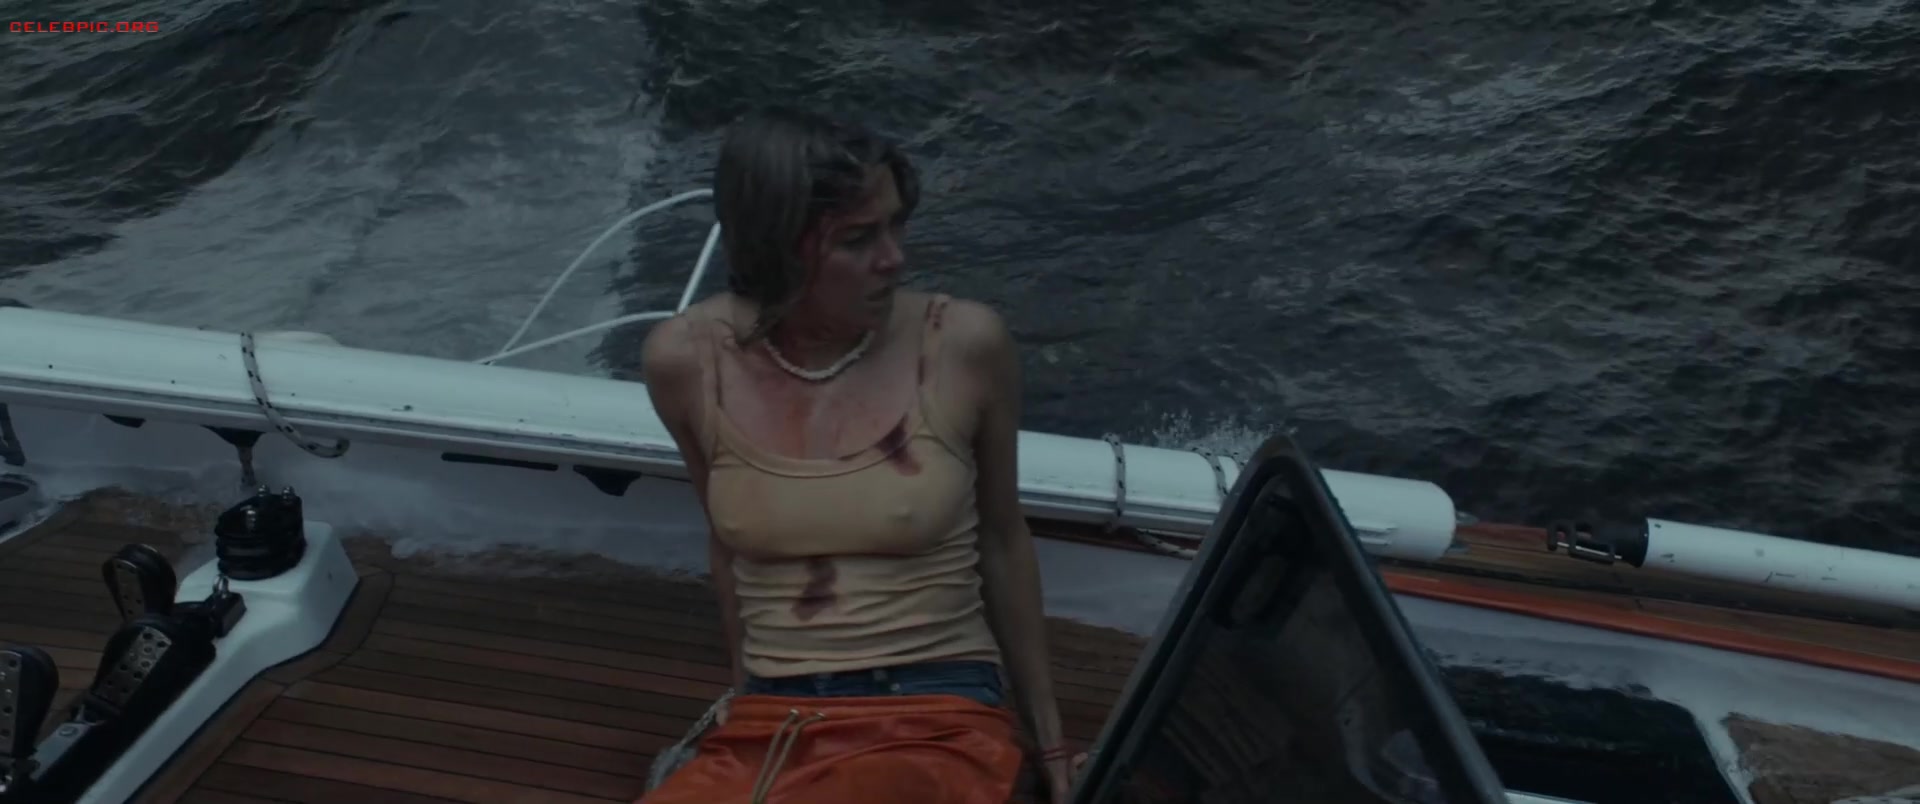 Shailene Woodley - Adrift 1080p (1) 0038.jpg